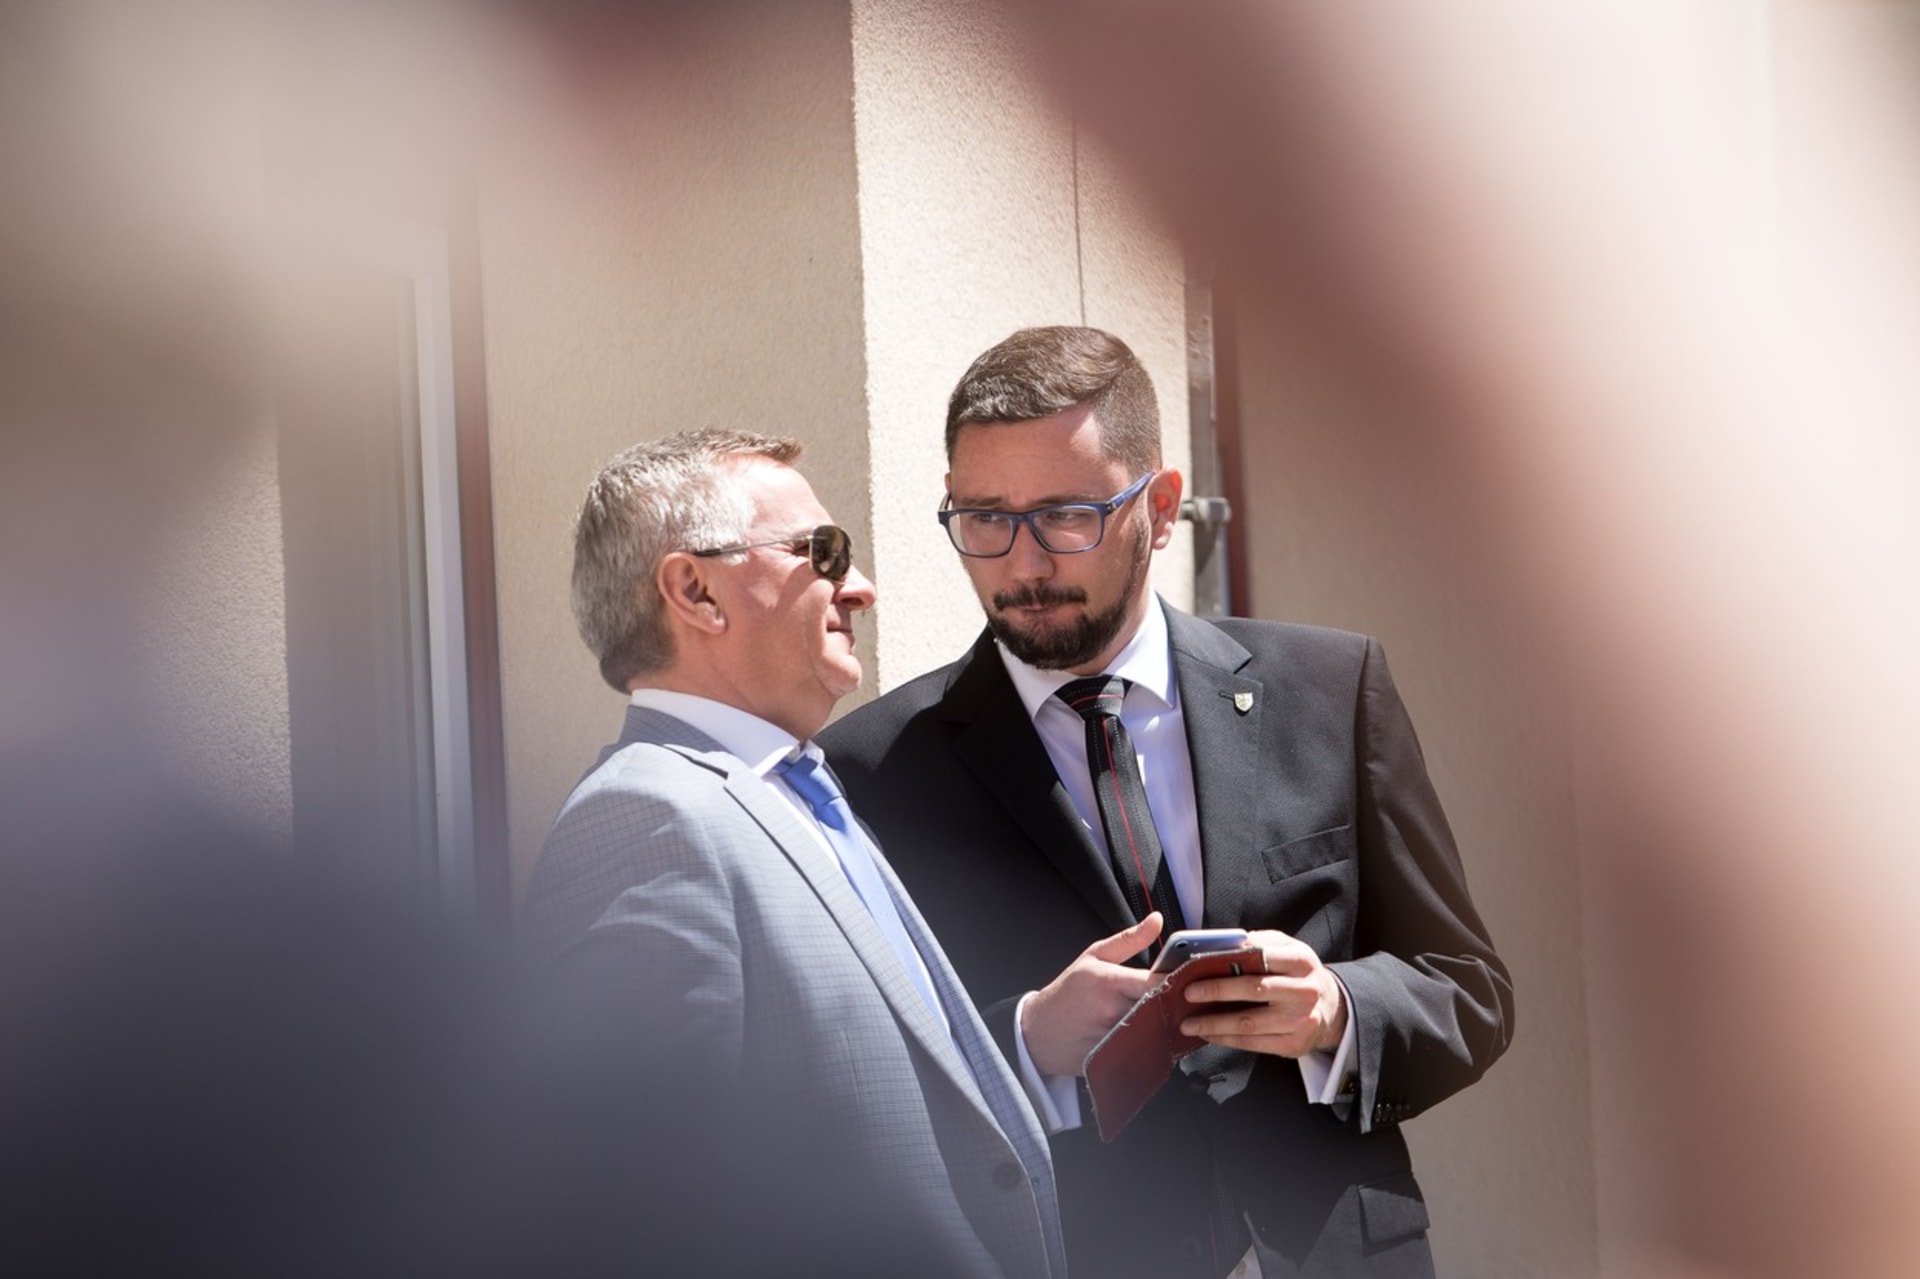 Na snímku mluvčí prezidenta Miloše Zemana Jiří Ovčáček s vedoucím Kanceláře prezidenta Miloše Zemana Vratislavem Mynářem